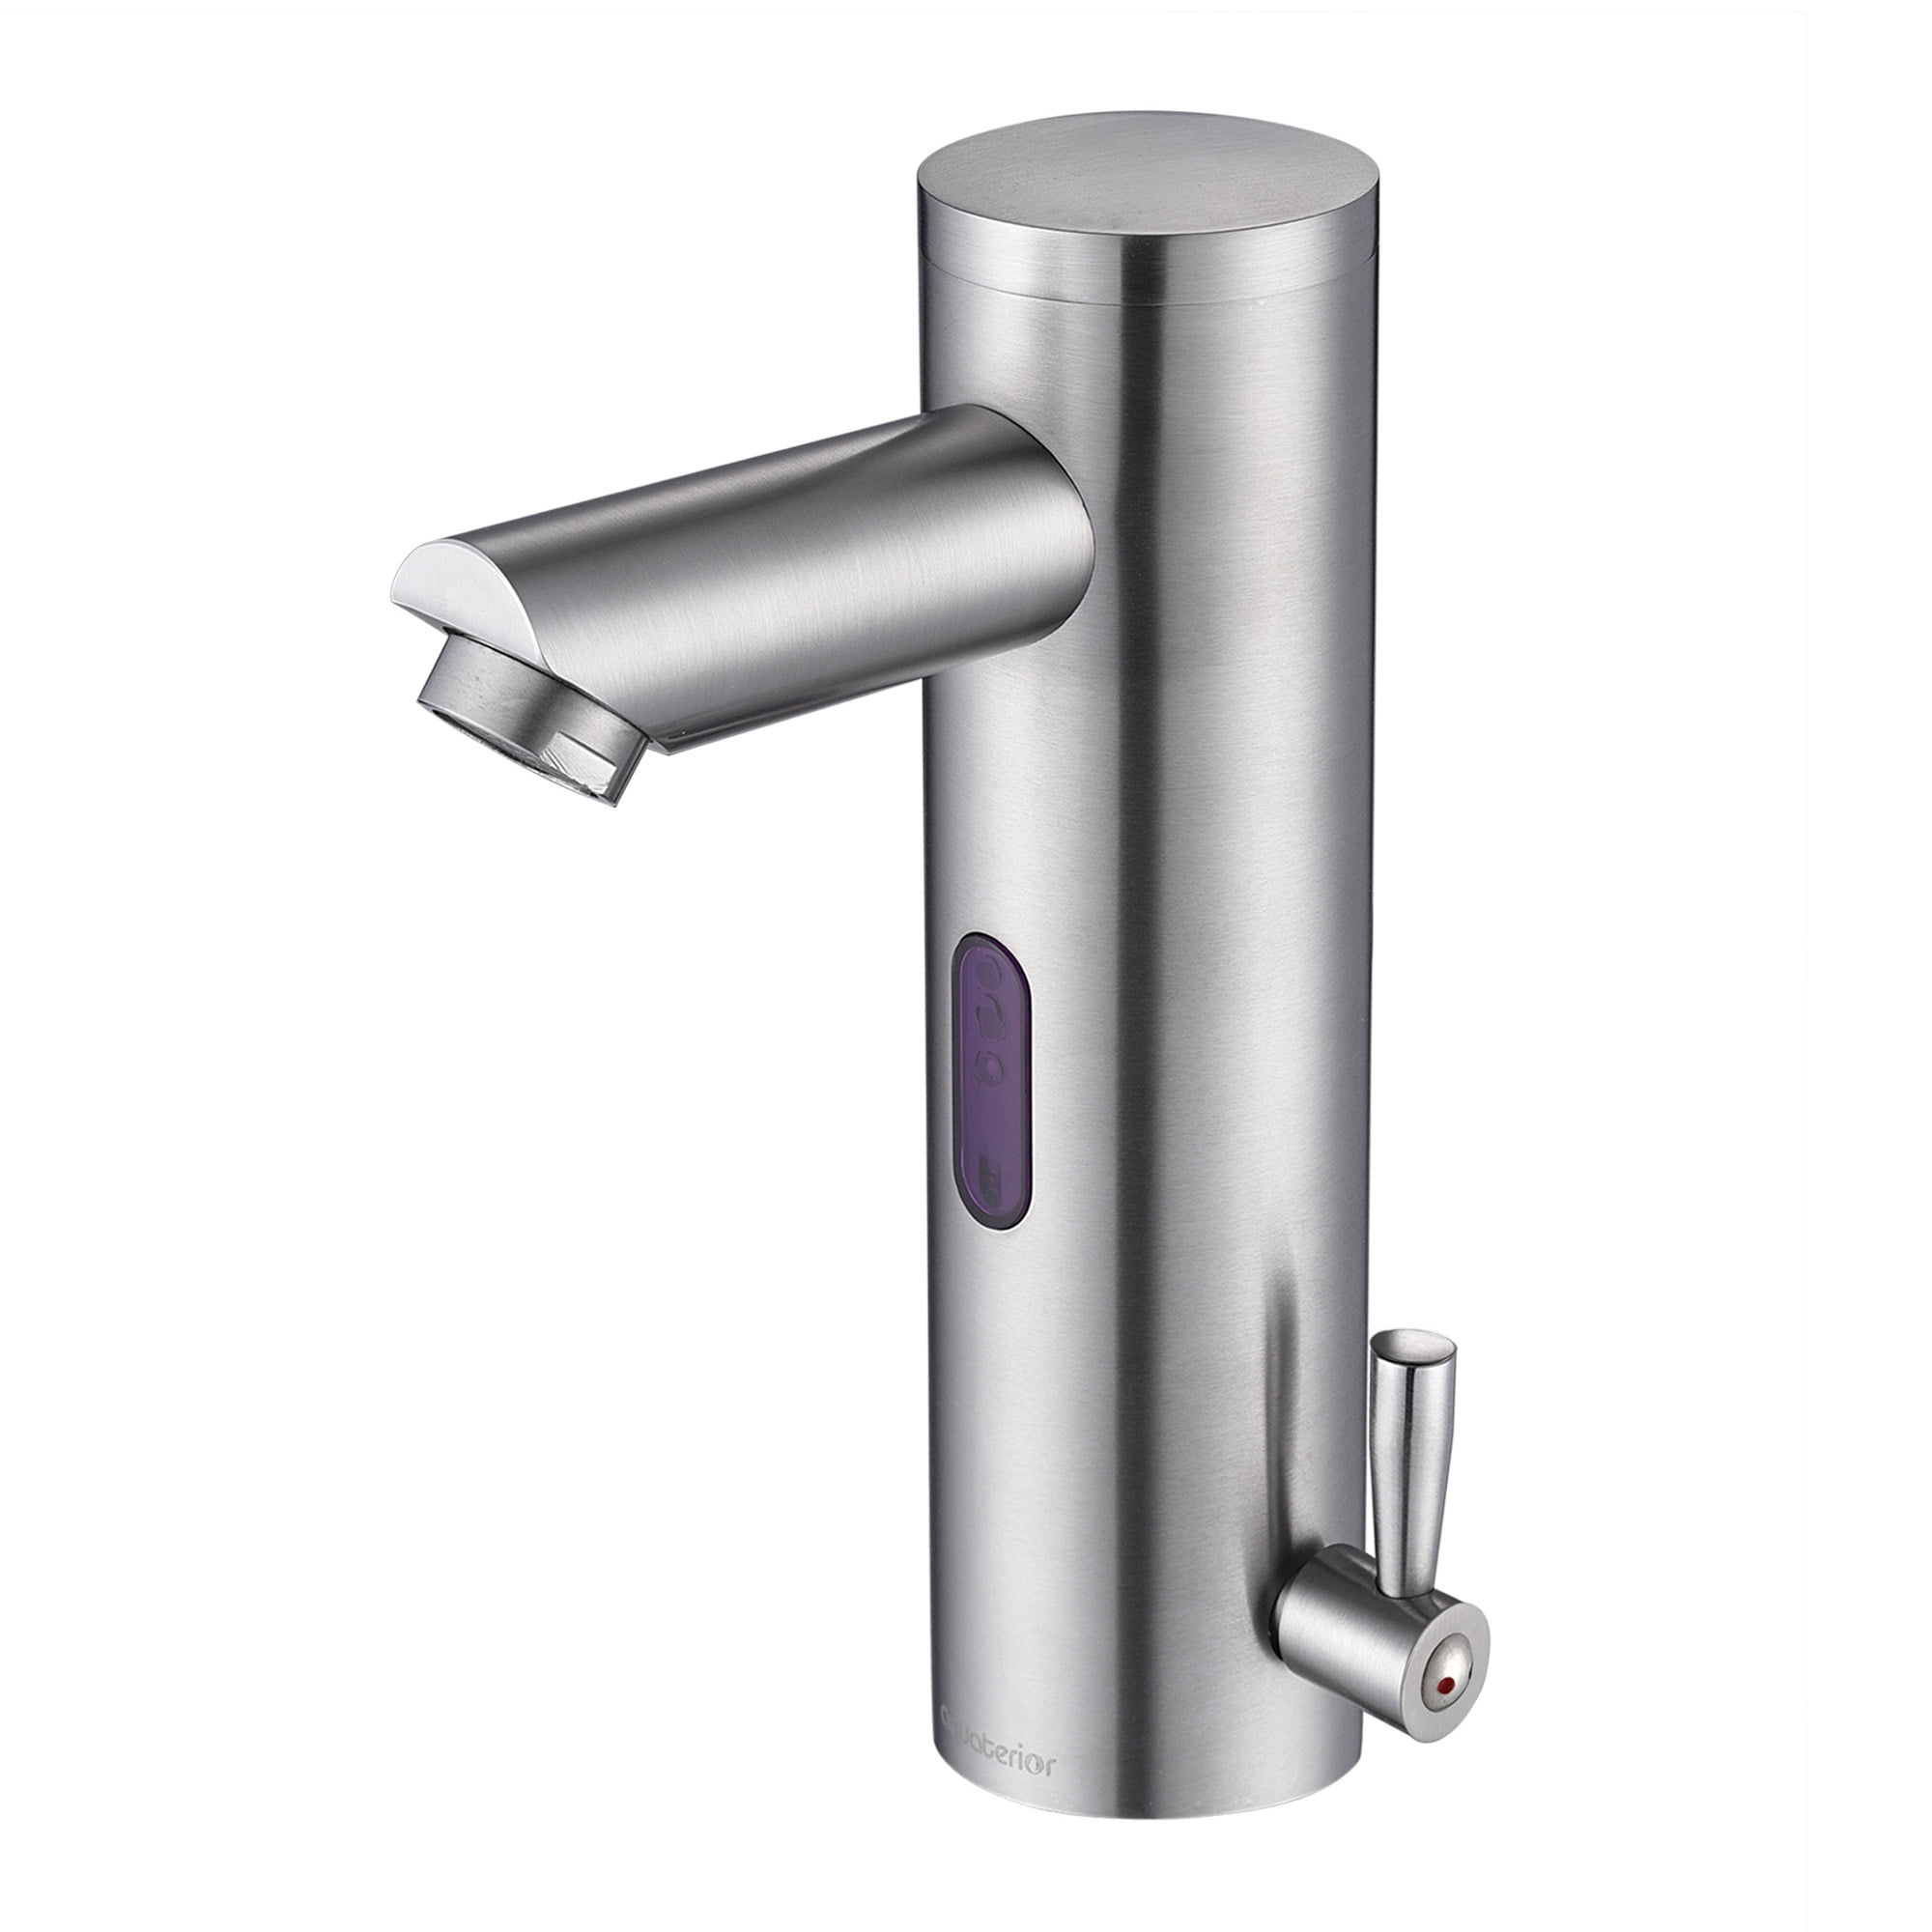 Details about   Automatic Sensor Hands Free Touchless Bathroom Kitchen Faucet Mixer Tap Lavatory 